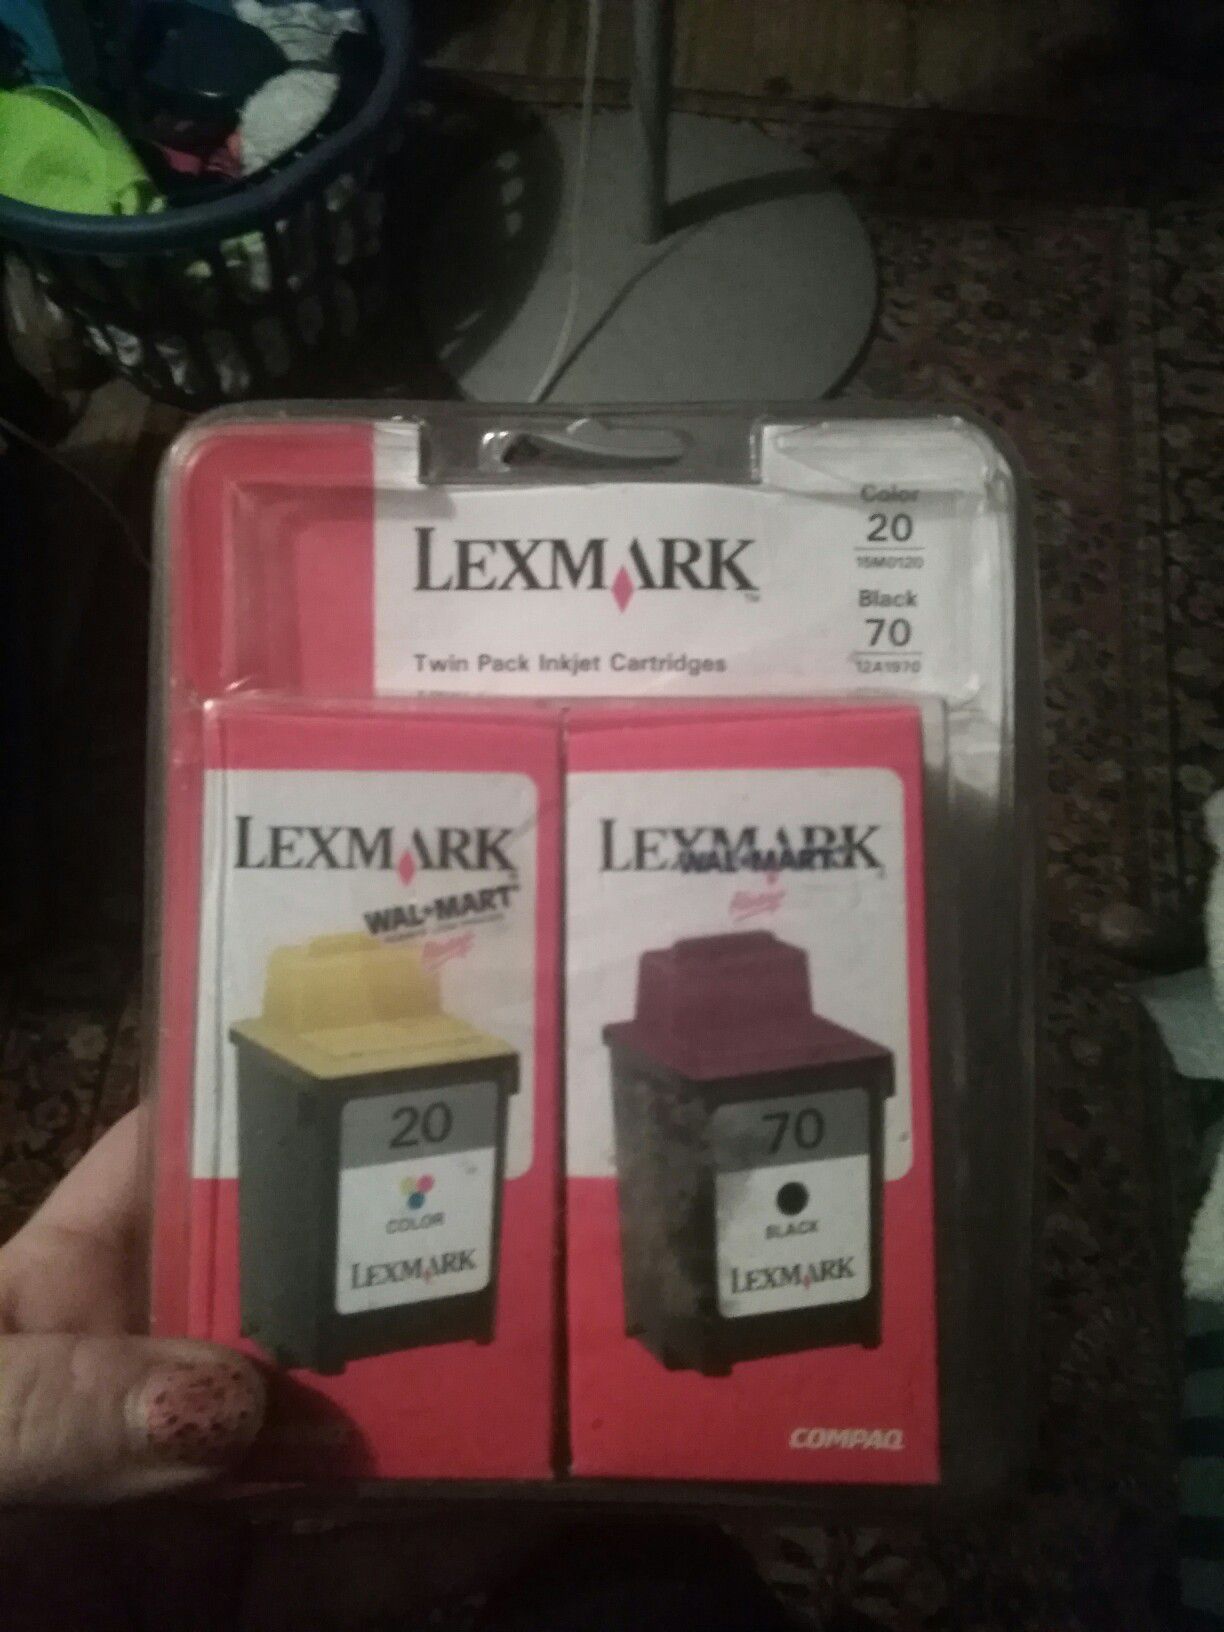 Lexmark™ 70/20 Black/Color Ink Cartridges 12A1970/15M0120, Pack Of 2